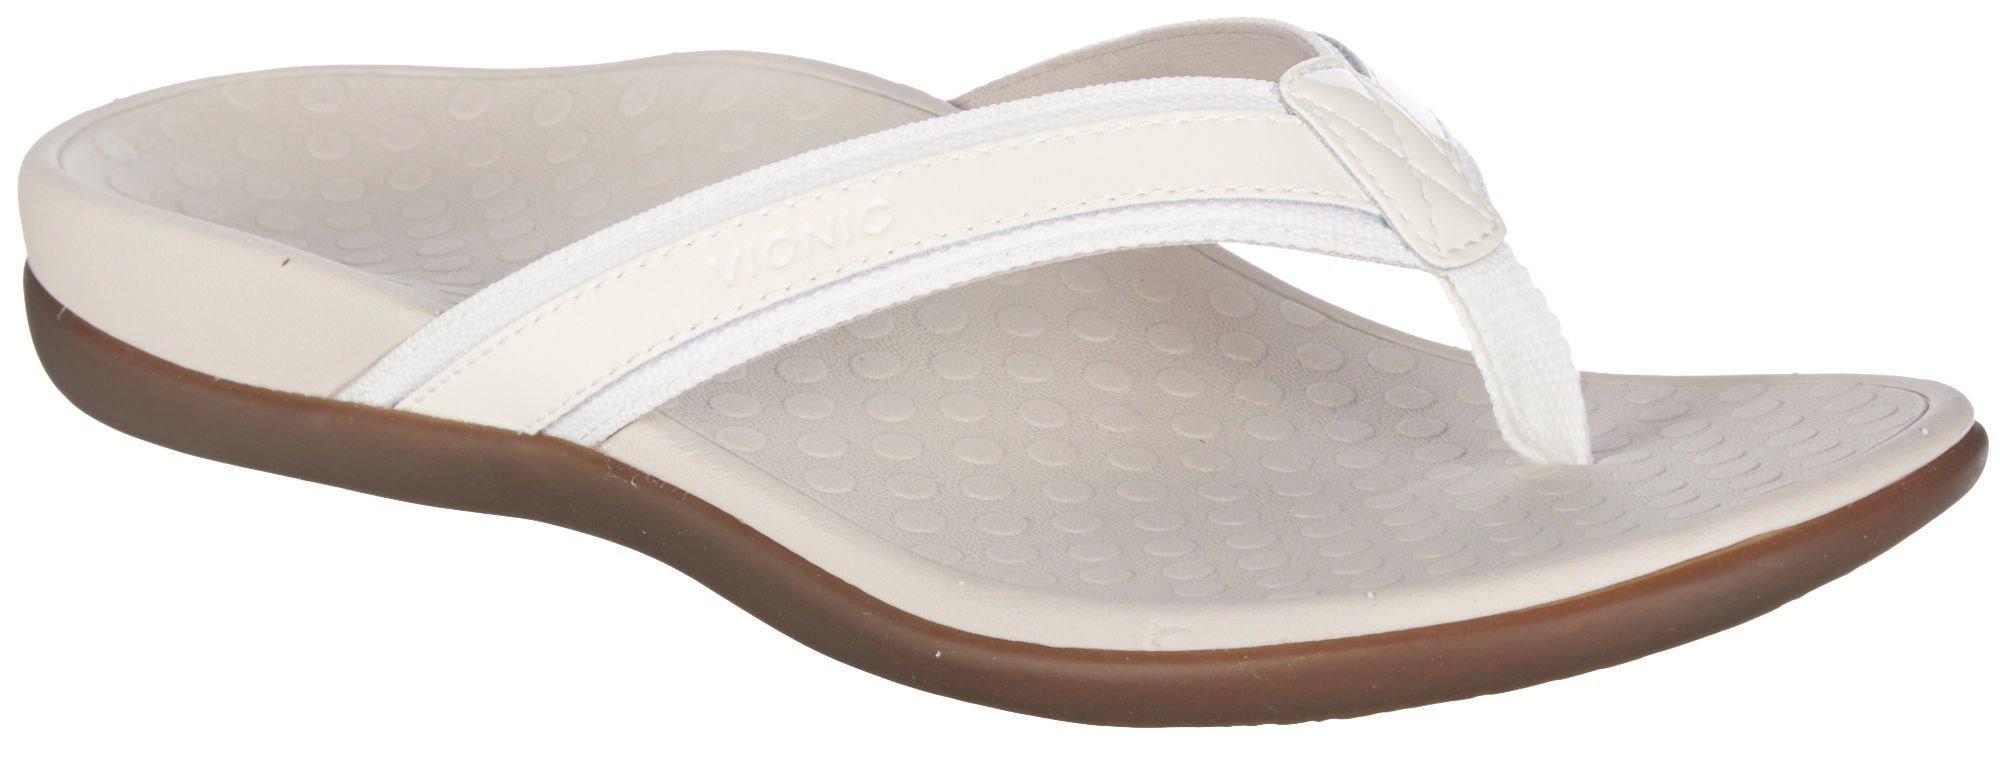 vionic white sandals